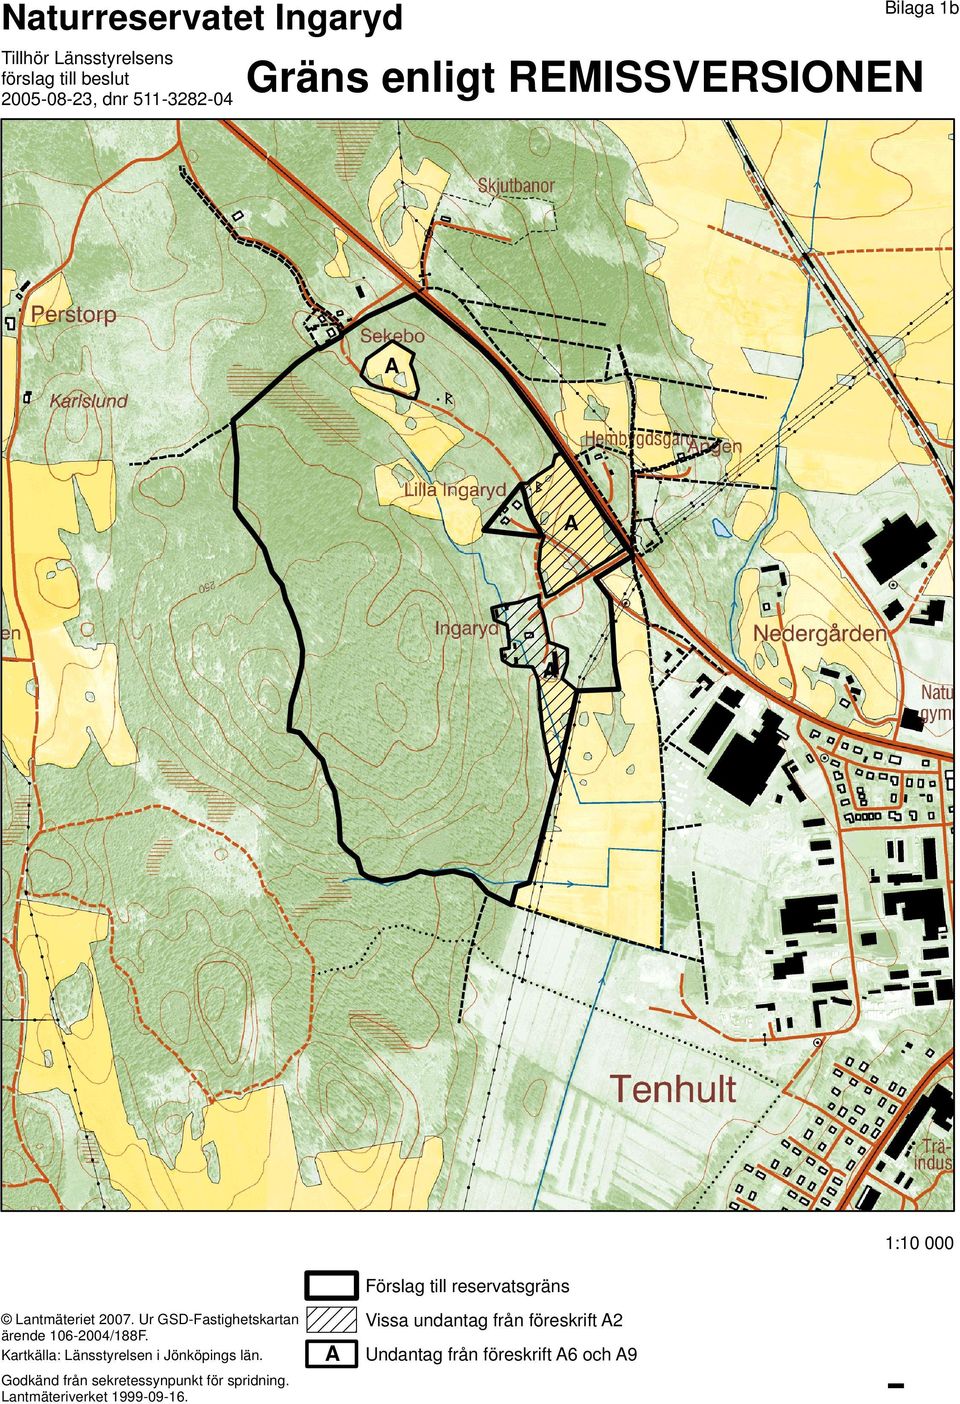 Ur GSD-Fastighetskartan ärende 106-2004/188F. Kartkälla: Länsstyrelsen i Jönköpings län.